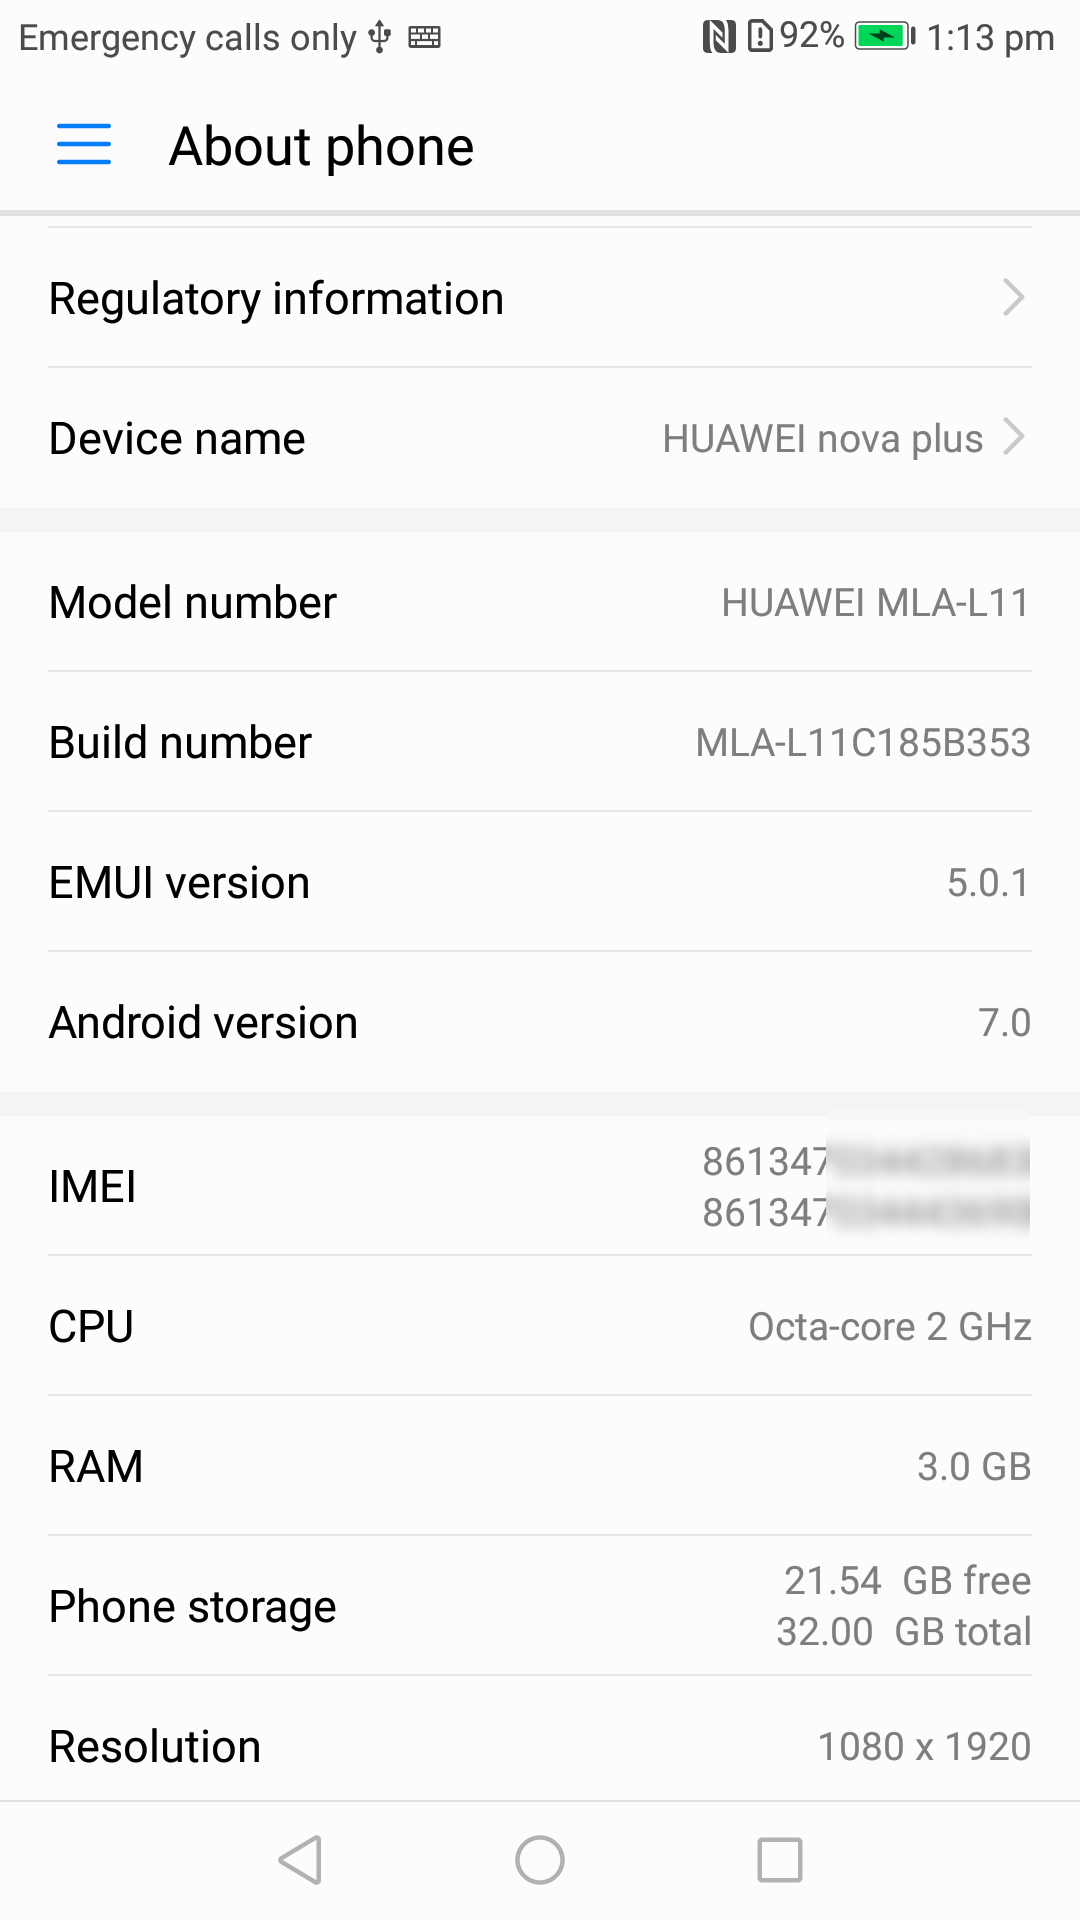    Huawei Nova Plus (MLA-L11)